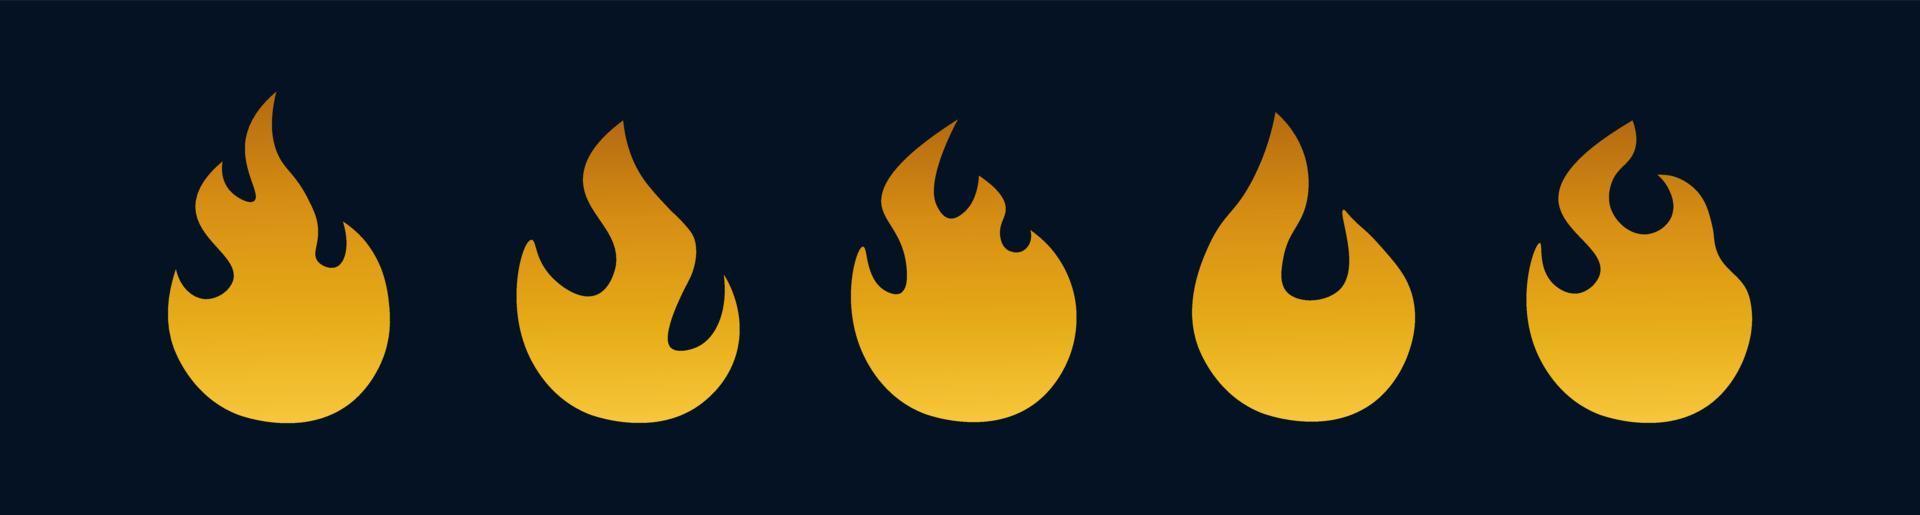 insieme di vettore dell'icona del fuoco. simbolo d'oro della fiamma. icona del fuoco dorato isolata.